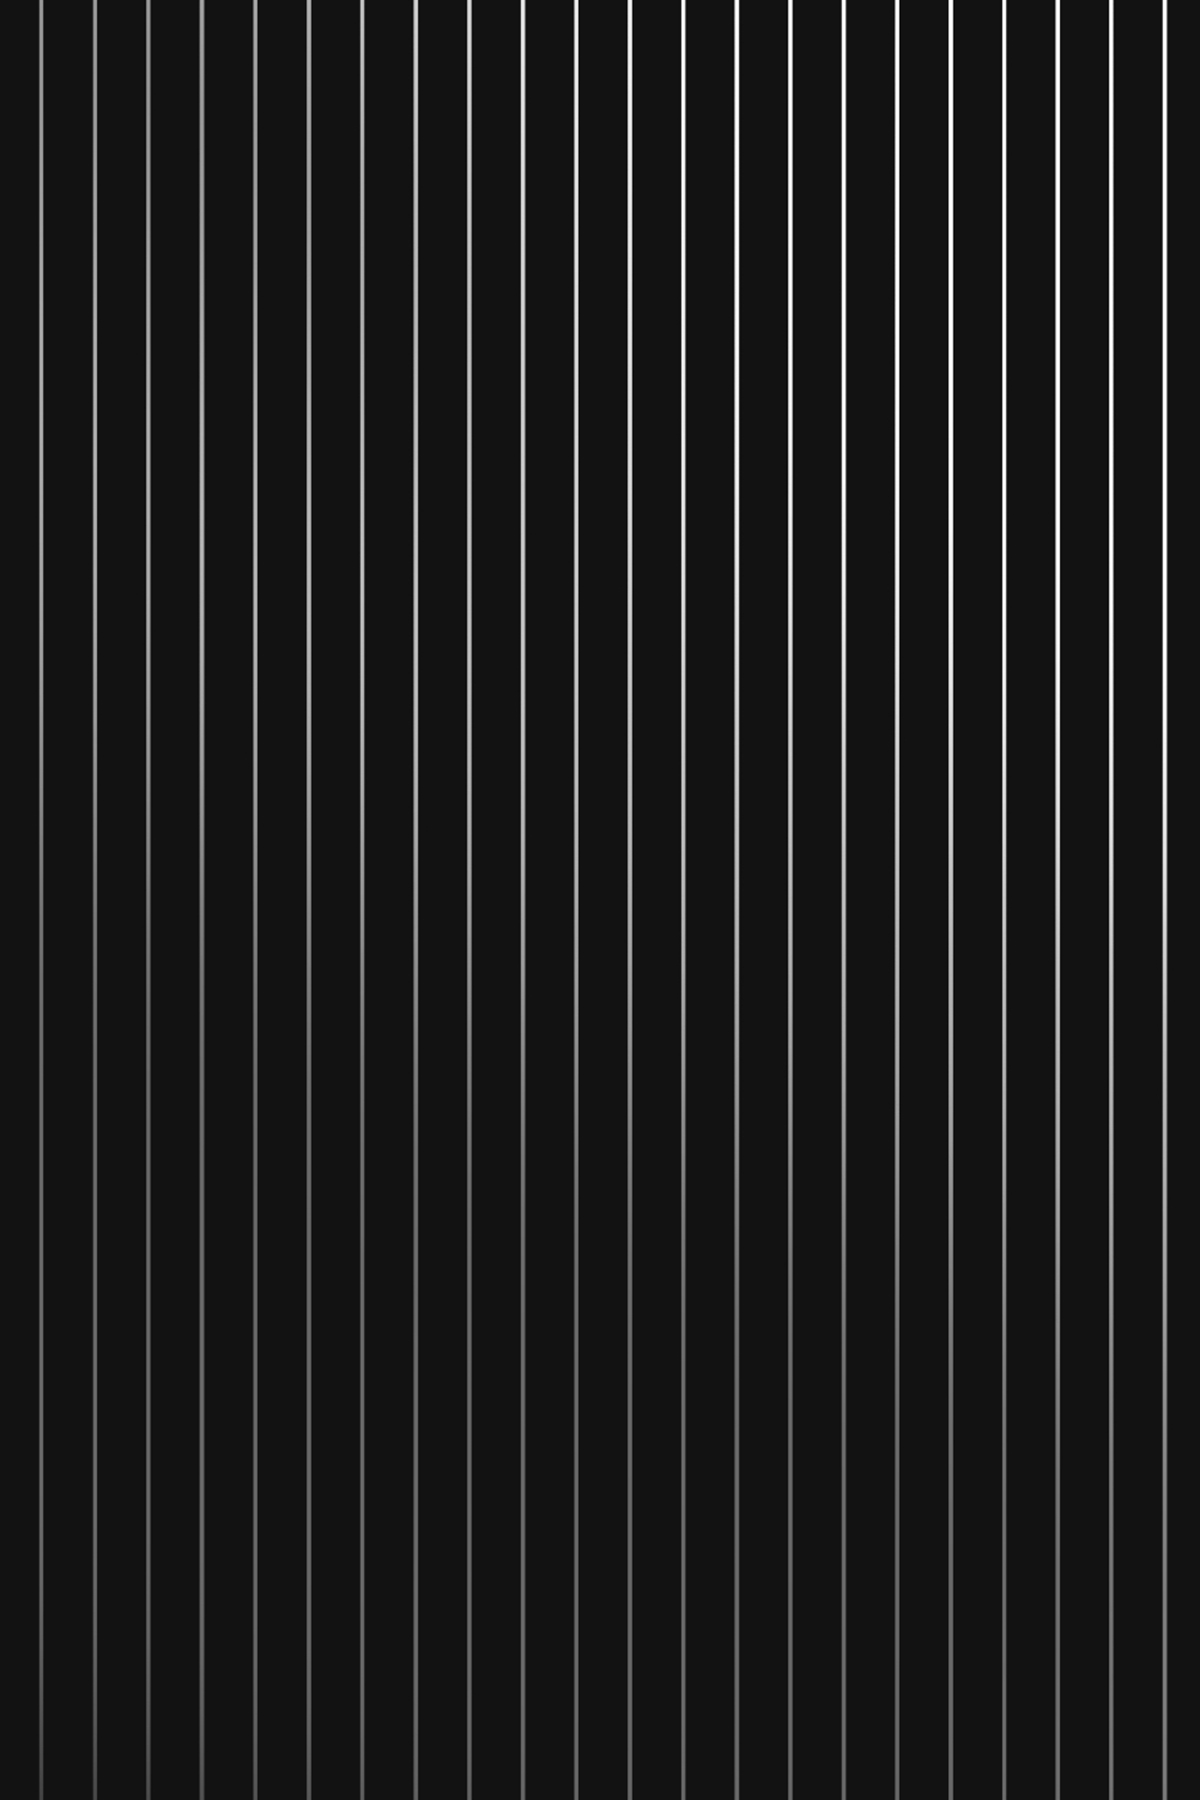 Với những họa tiết sọc đen trắng thanh lịch, Black and White Pinstripe Wallpaper sẽ khiến không gian sống của bạn trở nên sang trọng và độc đáo hơn. Hãy cùng chiêm ngưỡng những hình ảnh đẹp mắt về loại giấy dán tường này tại Osu ngay hôm nay.